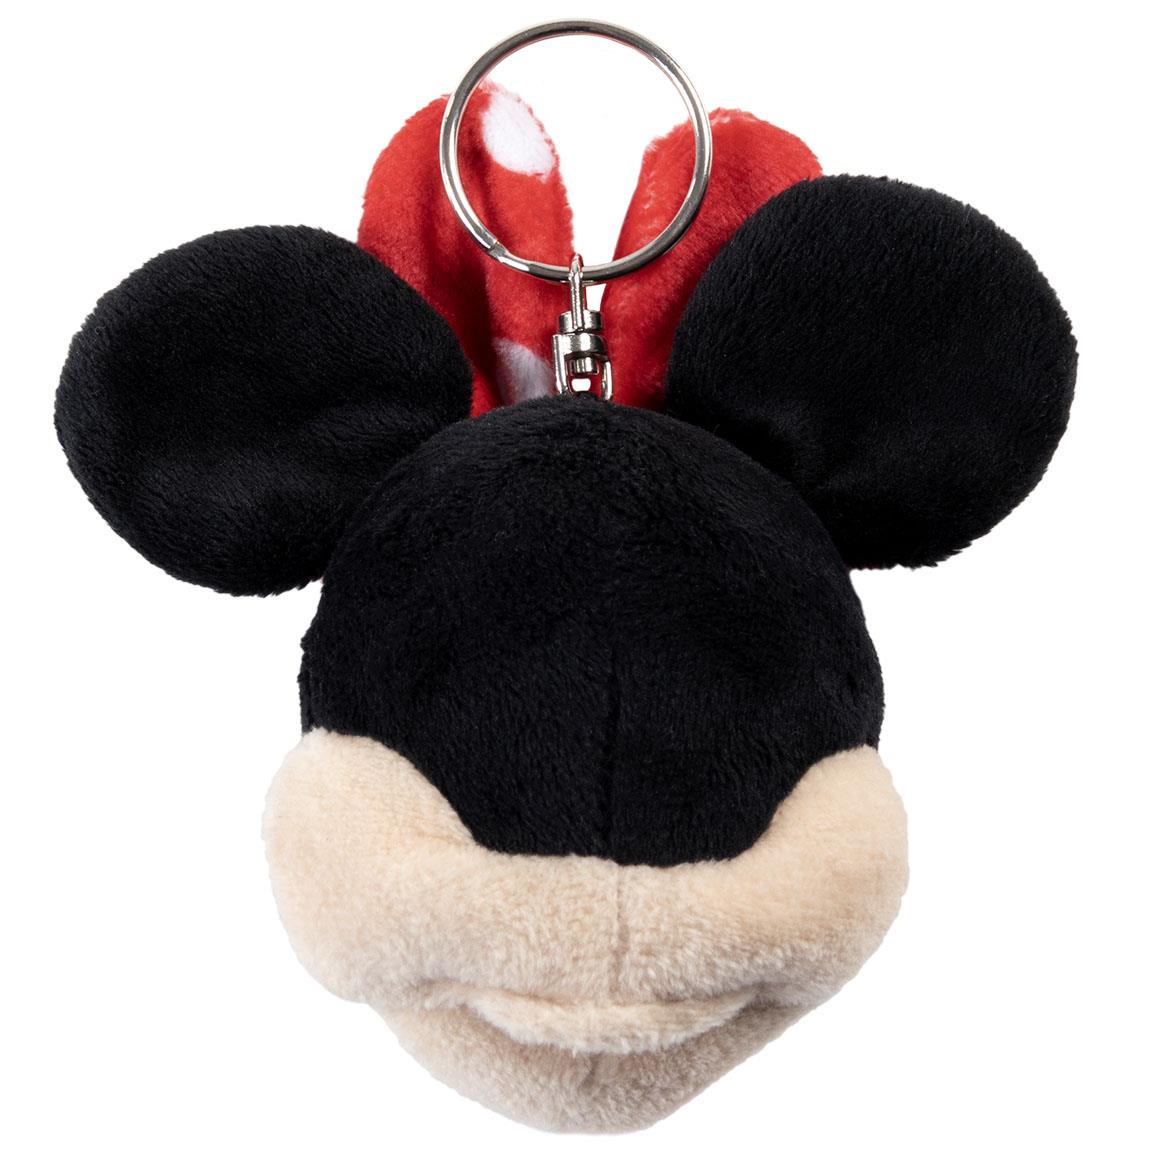 Porte-clés Peluche Minnie Mouse